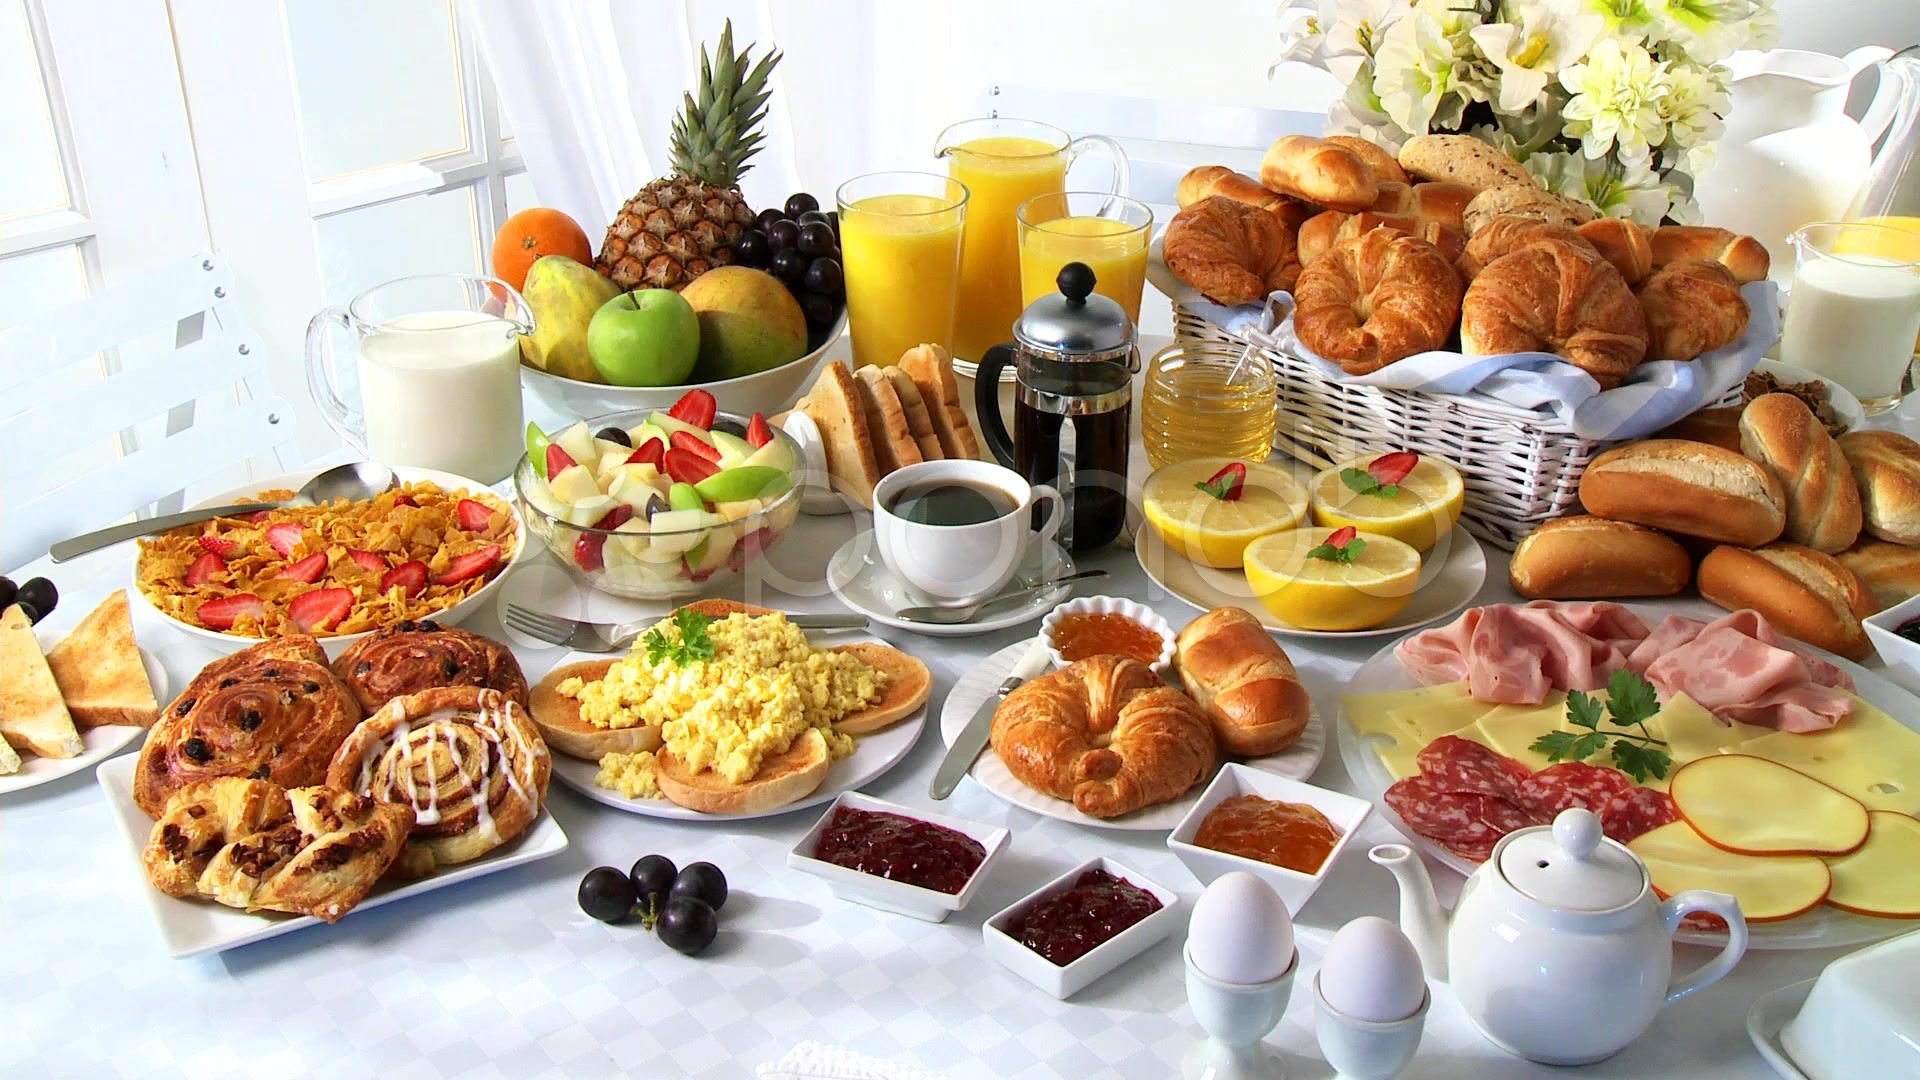 A lot more items. Завтрак на столе. Шикарный стол с едой. Много еды на столе. Большой стол с едой.